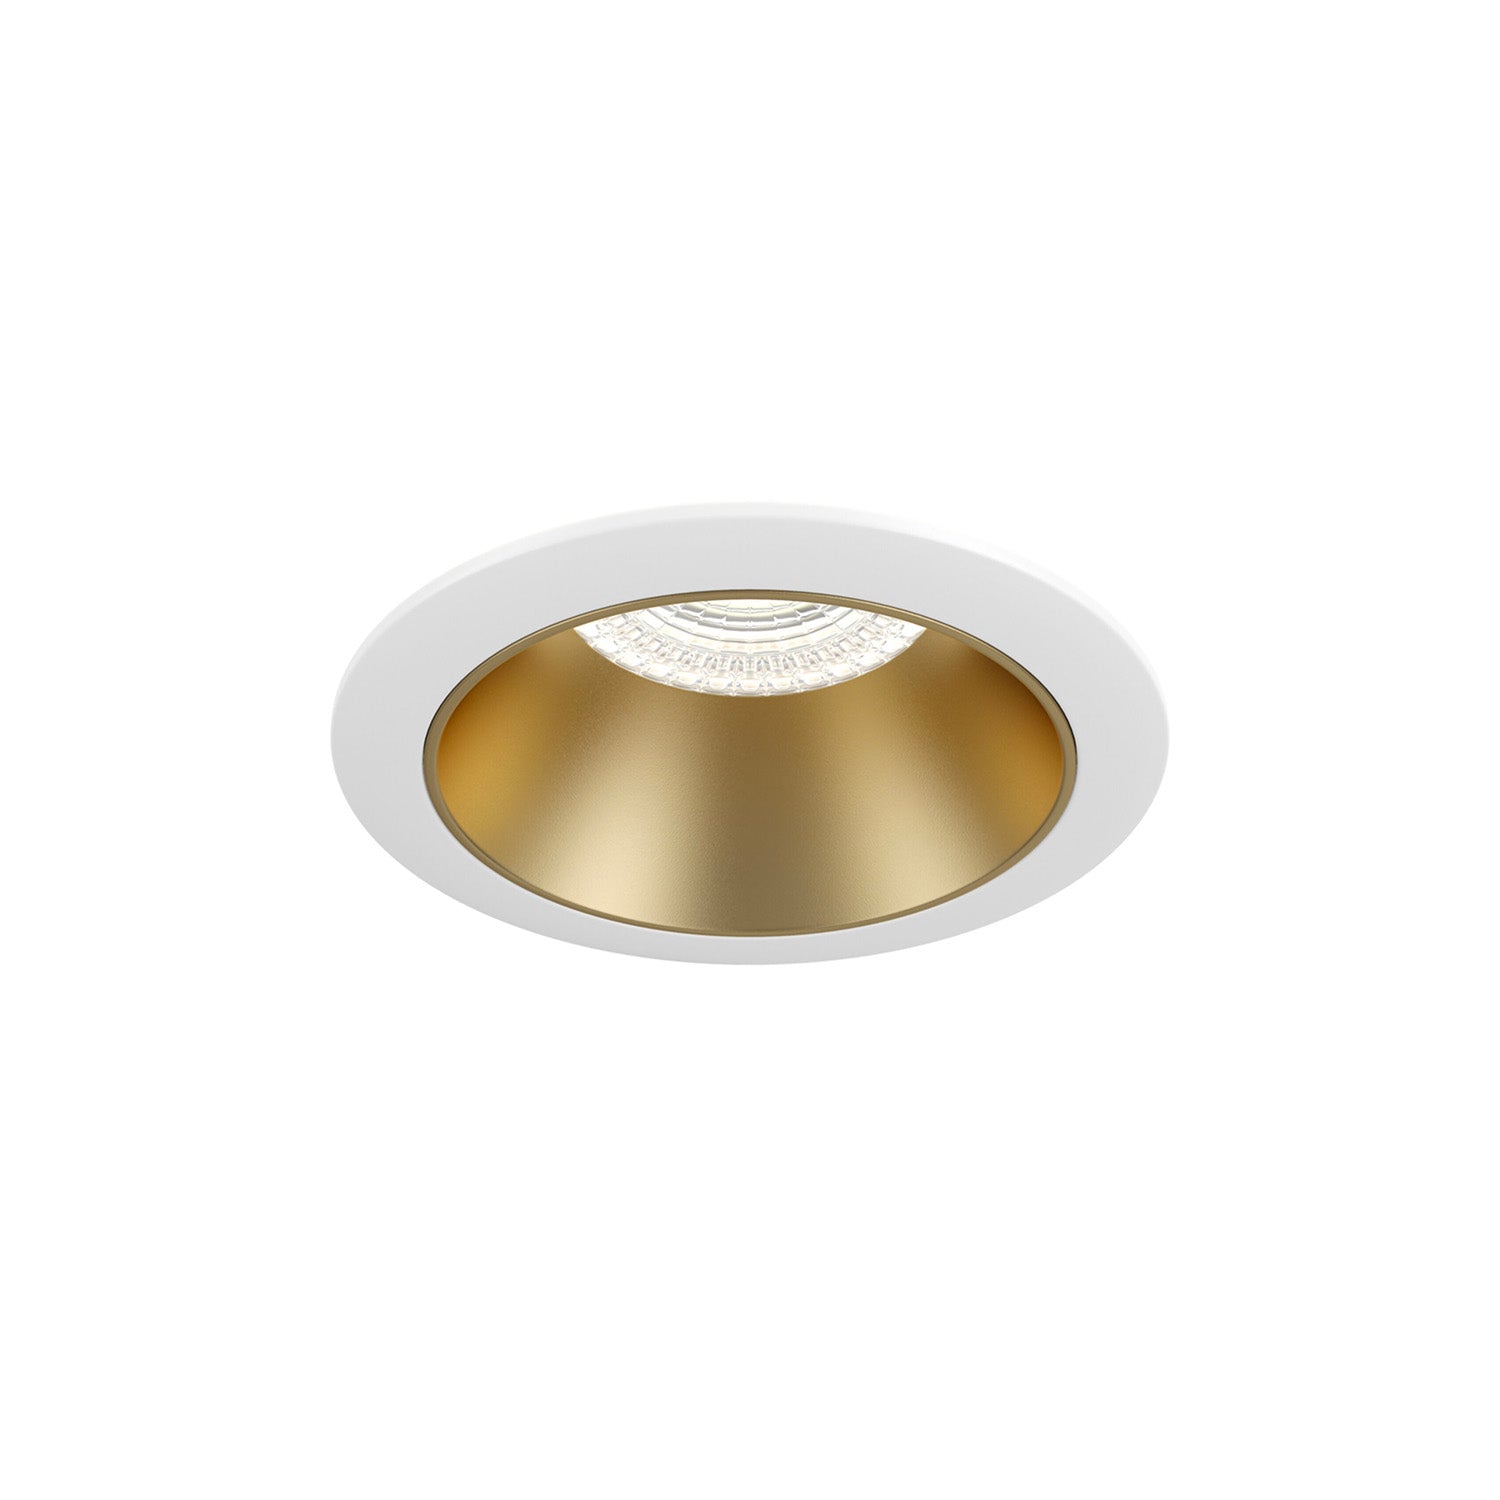 TEILEN – Designer-Einbaustrahler rund, Durchmesser 85 mm